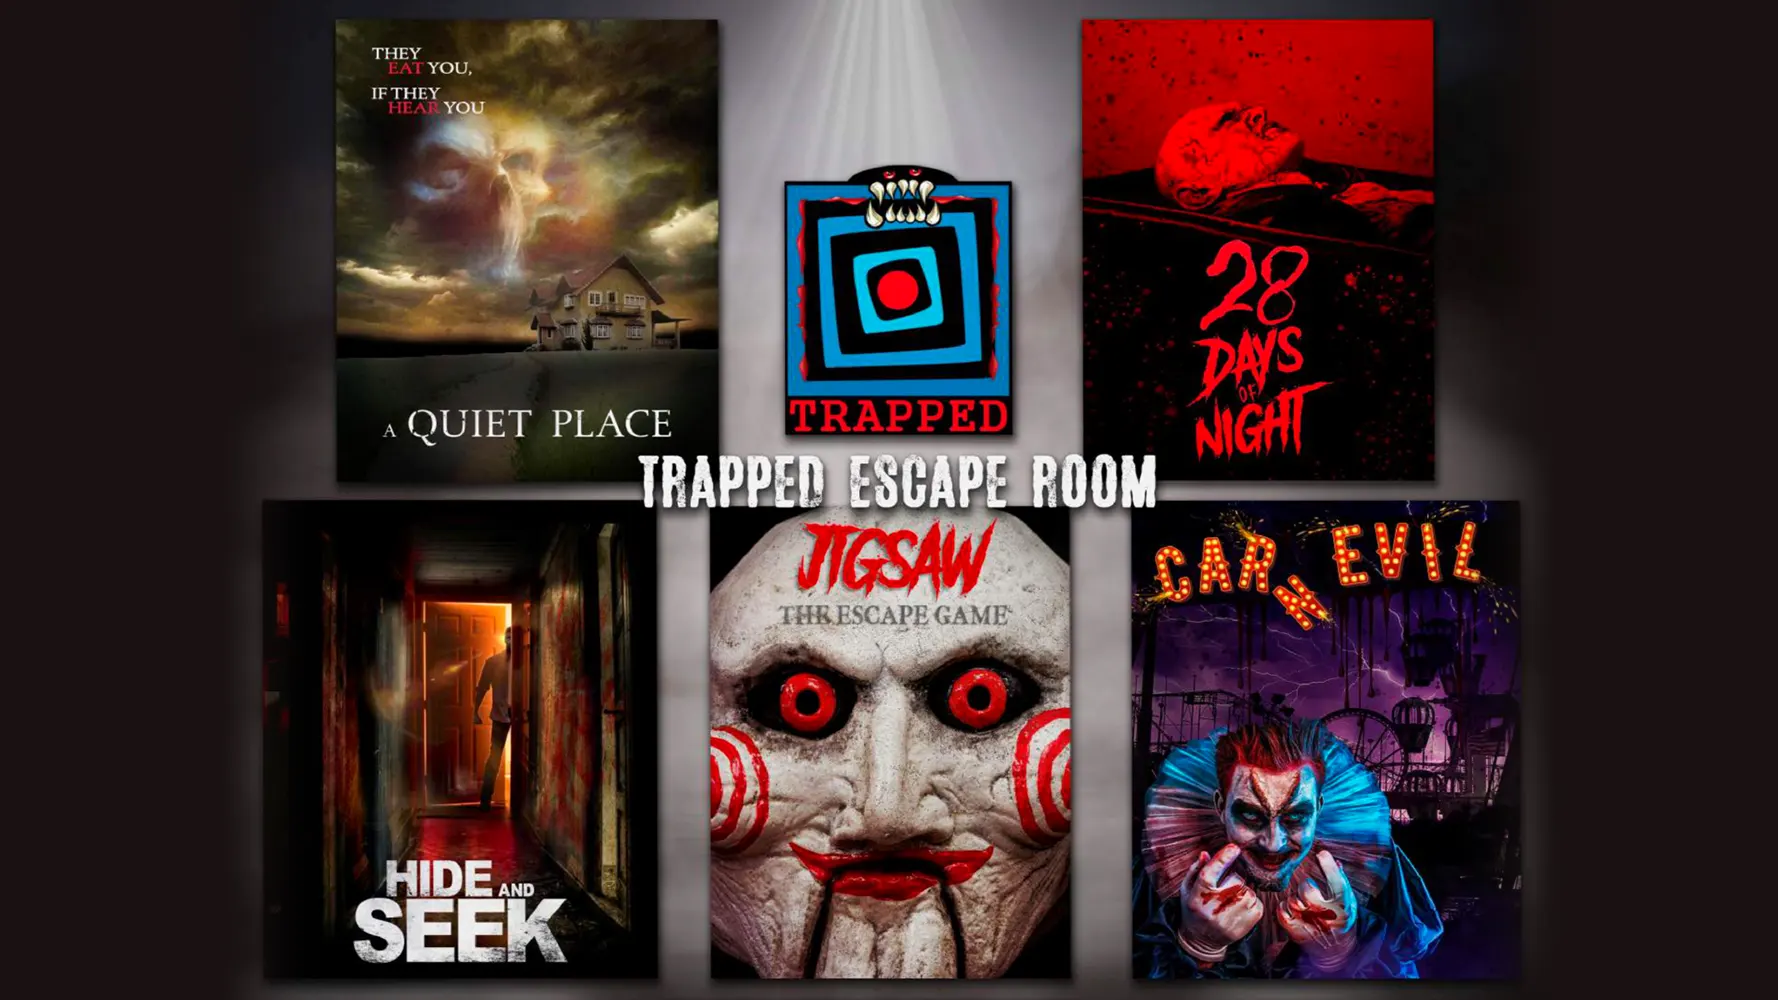 Trapped SG Trapped Escape Room copy